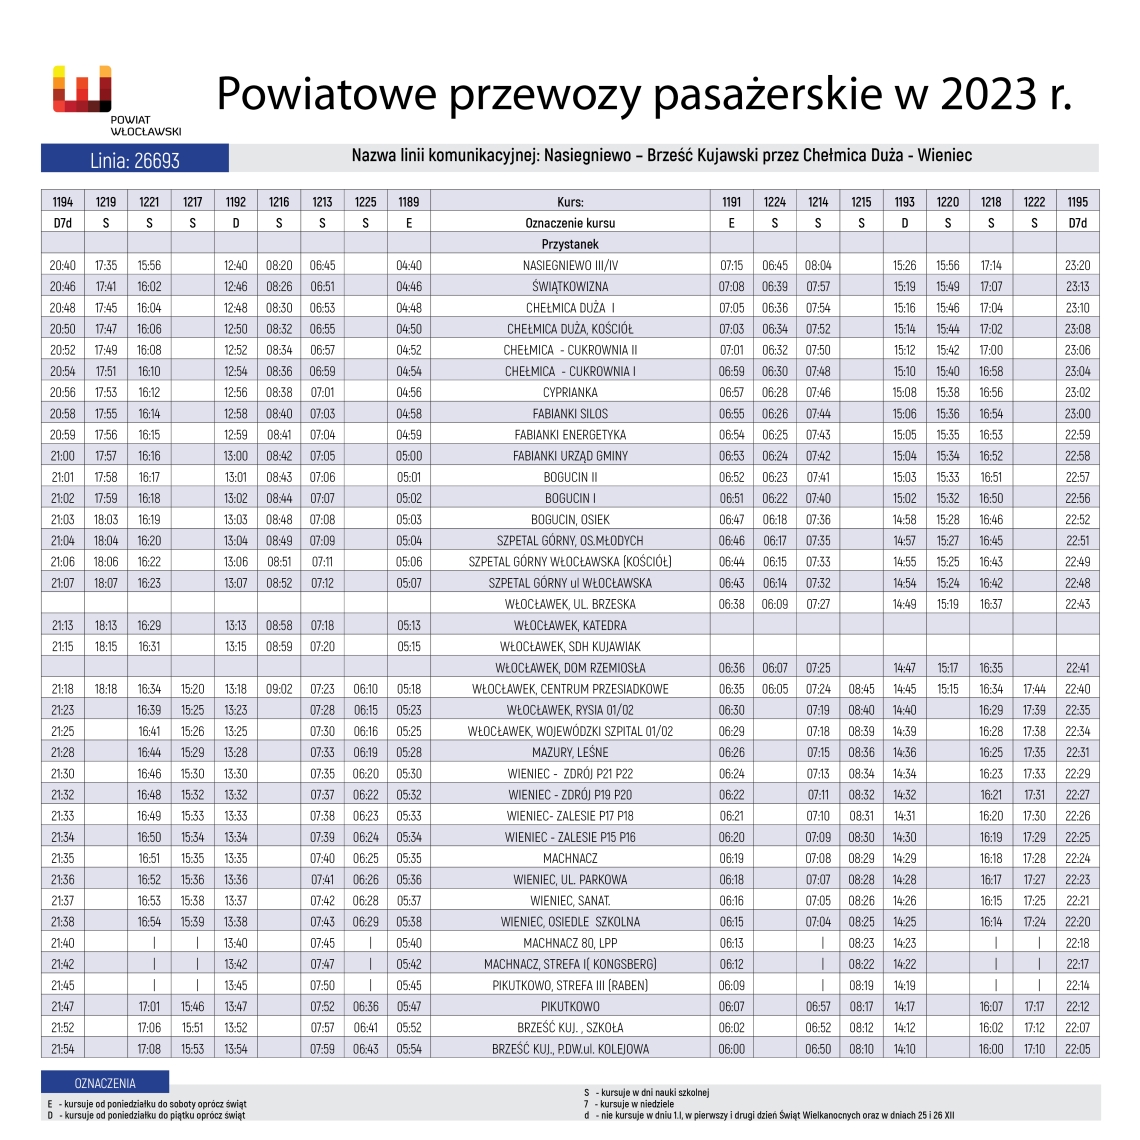 Powiatowe Przewozy Pasażerskie w 2023 r. - ROZKŁADY JAZDY